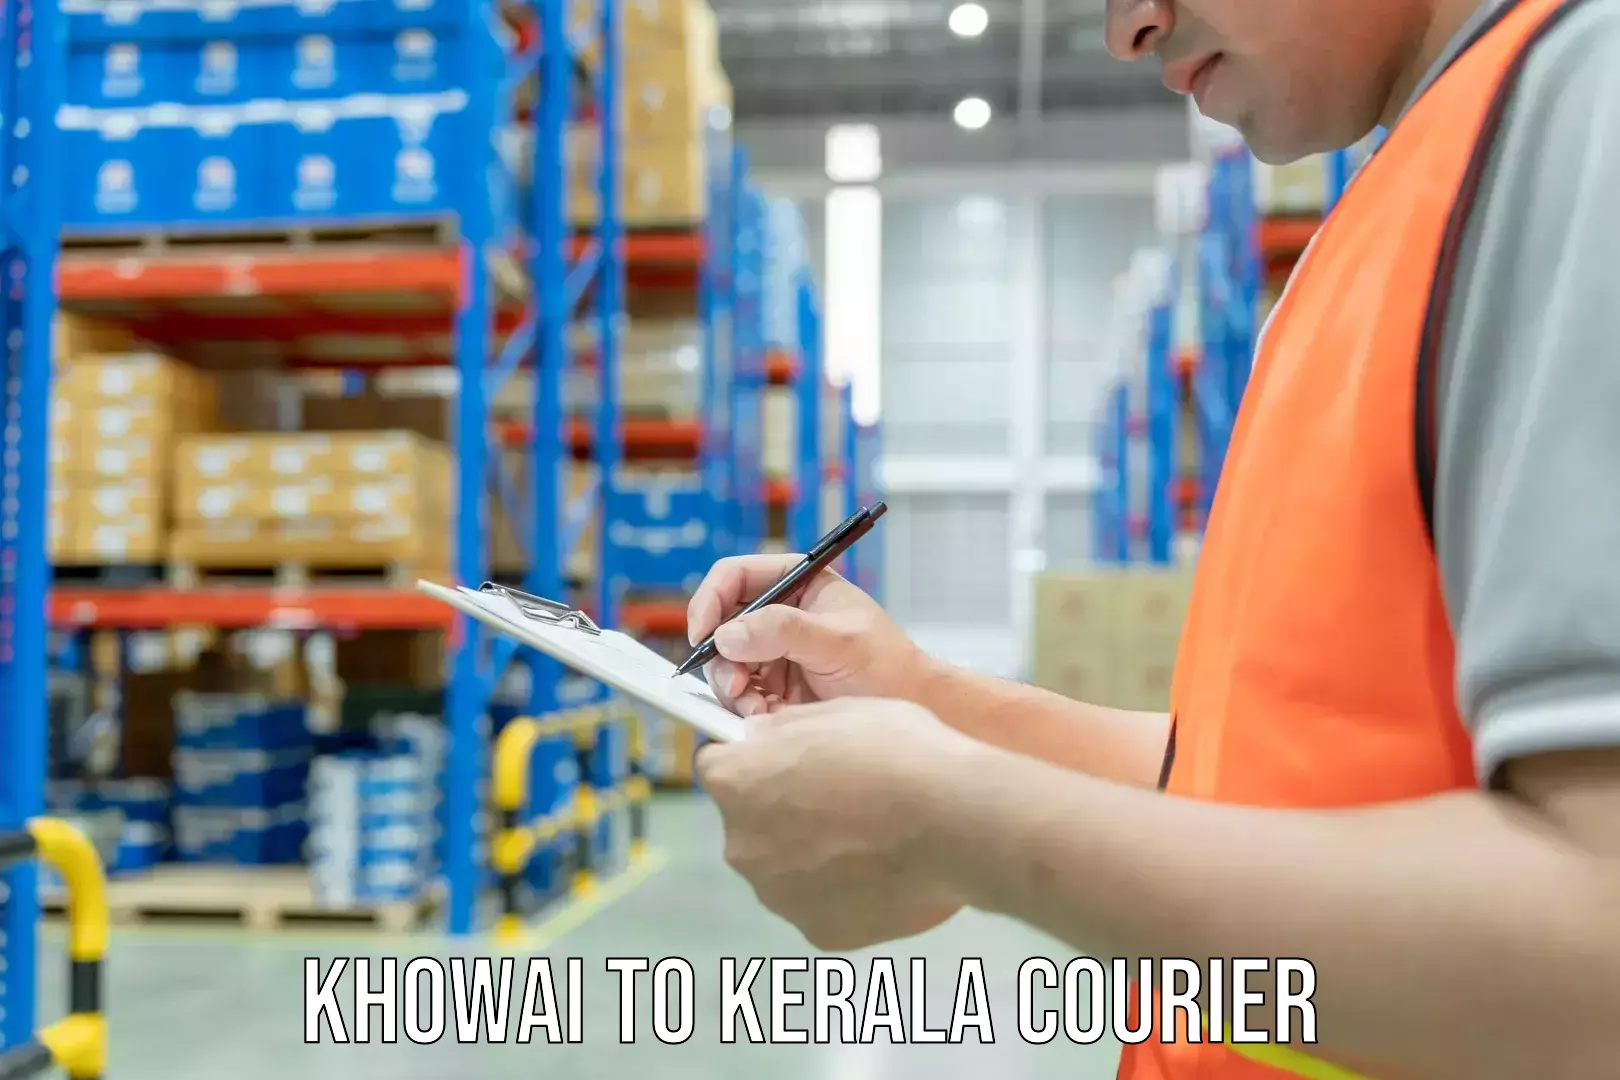 Ground shipping Khowai to Kerala